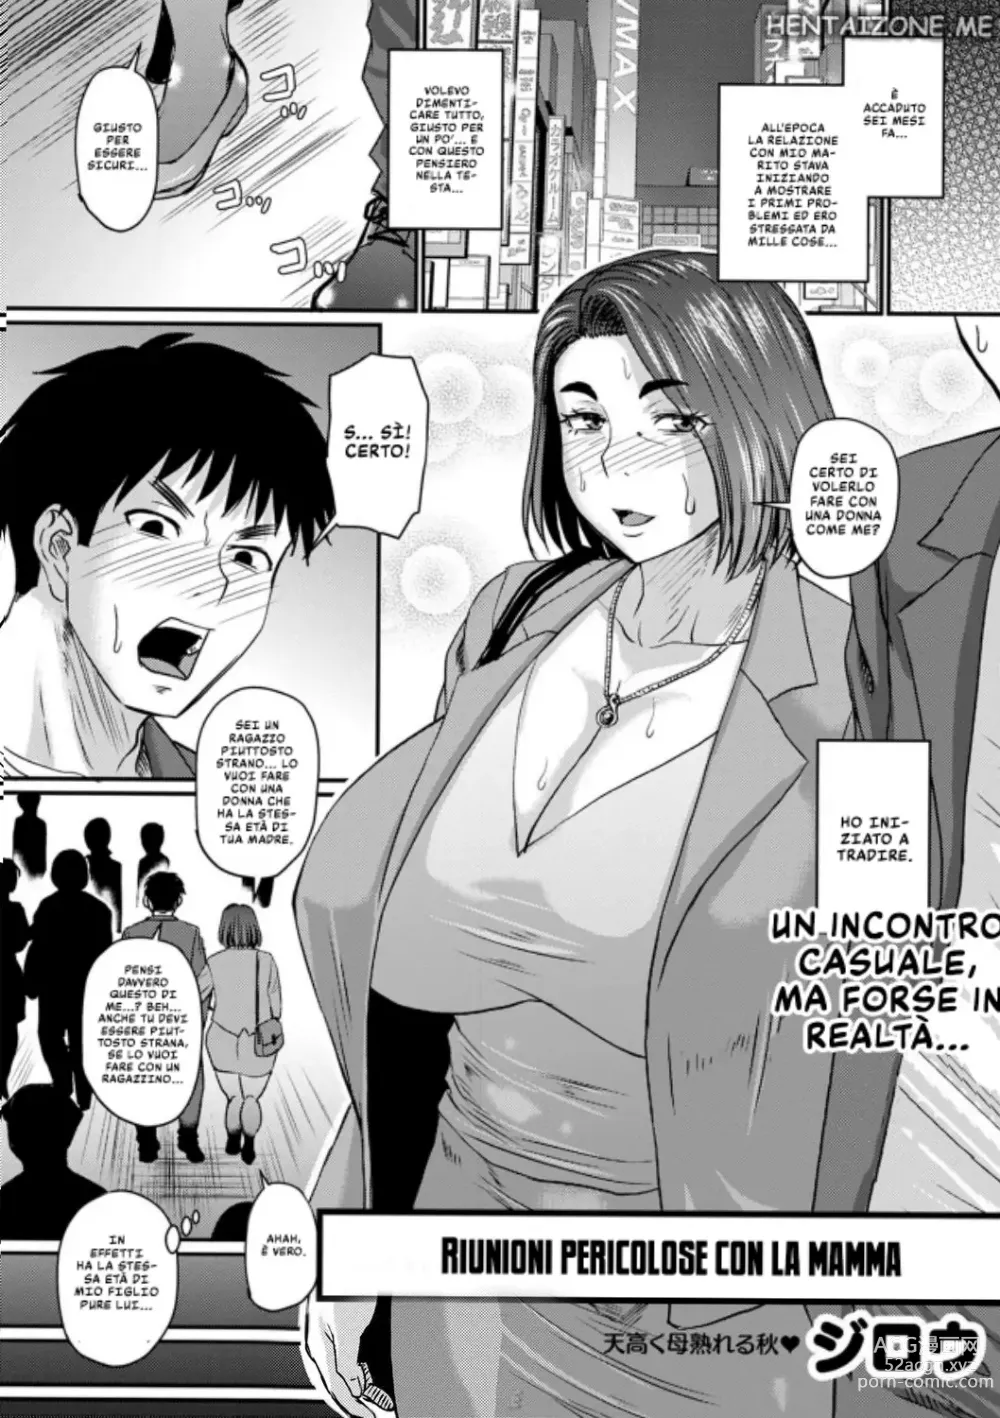 Page 1 of manga Riunioni Pericolose con La Mamma